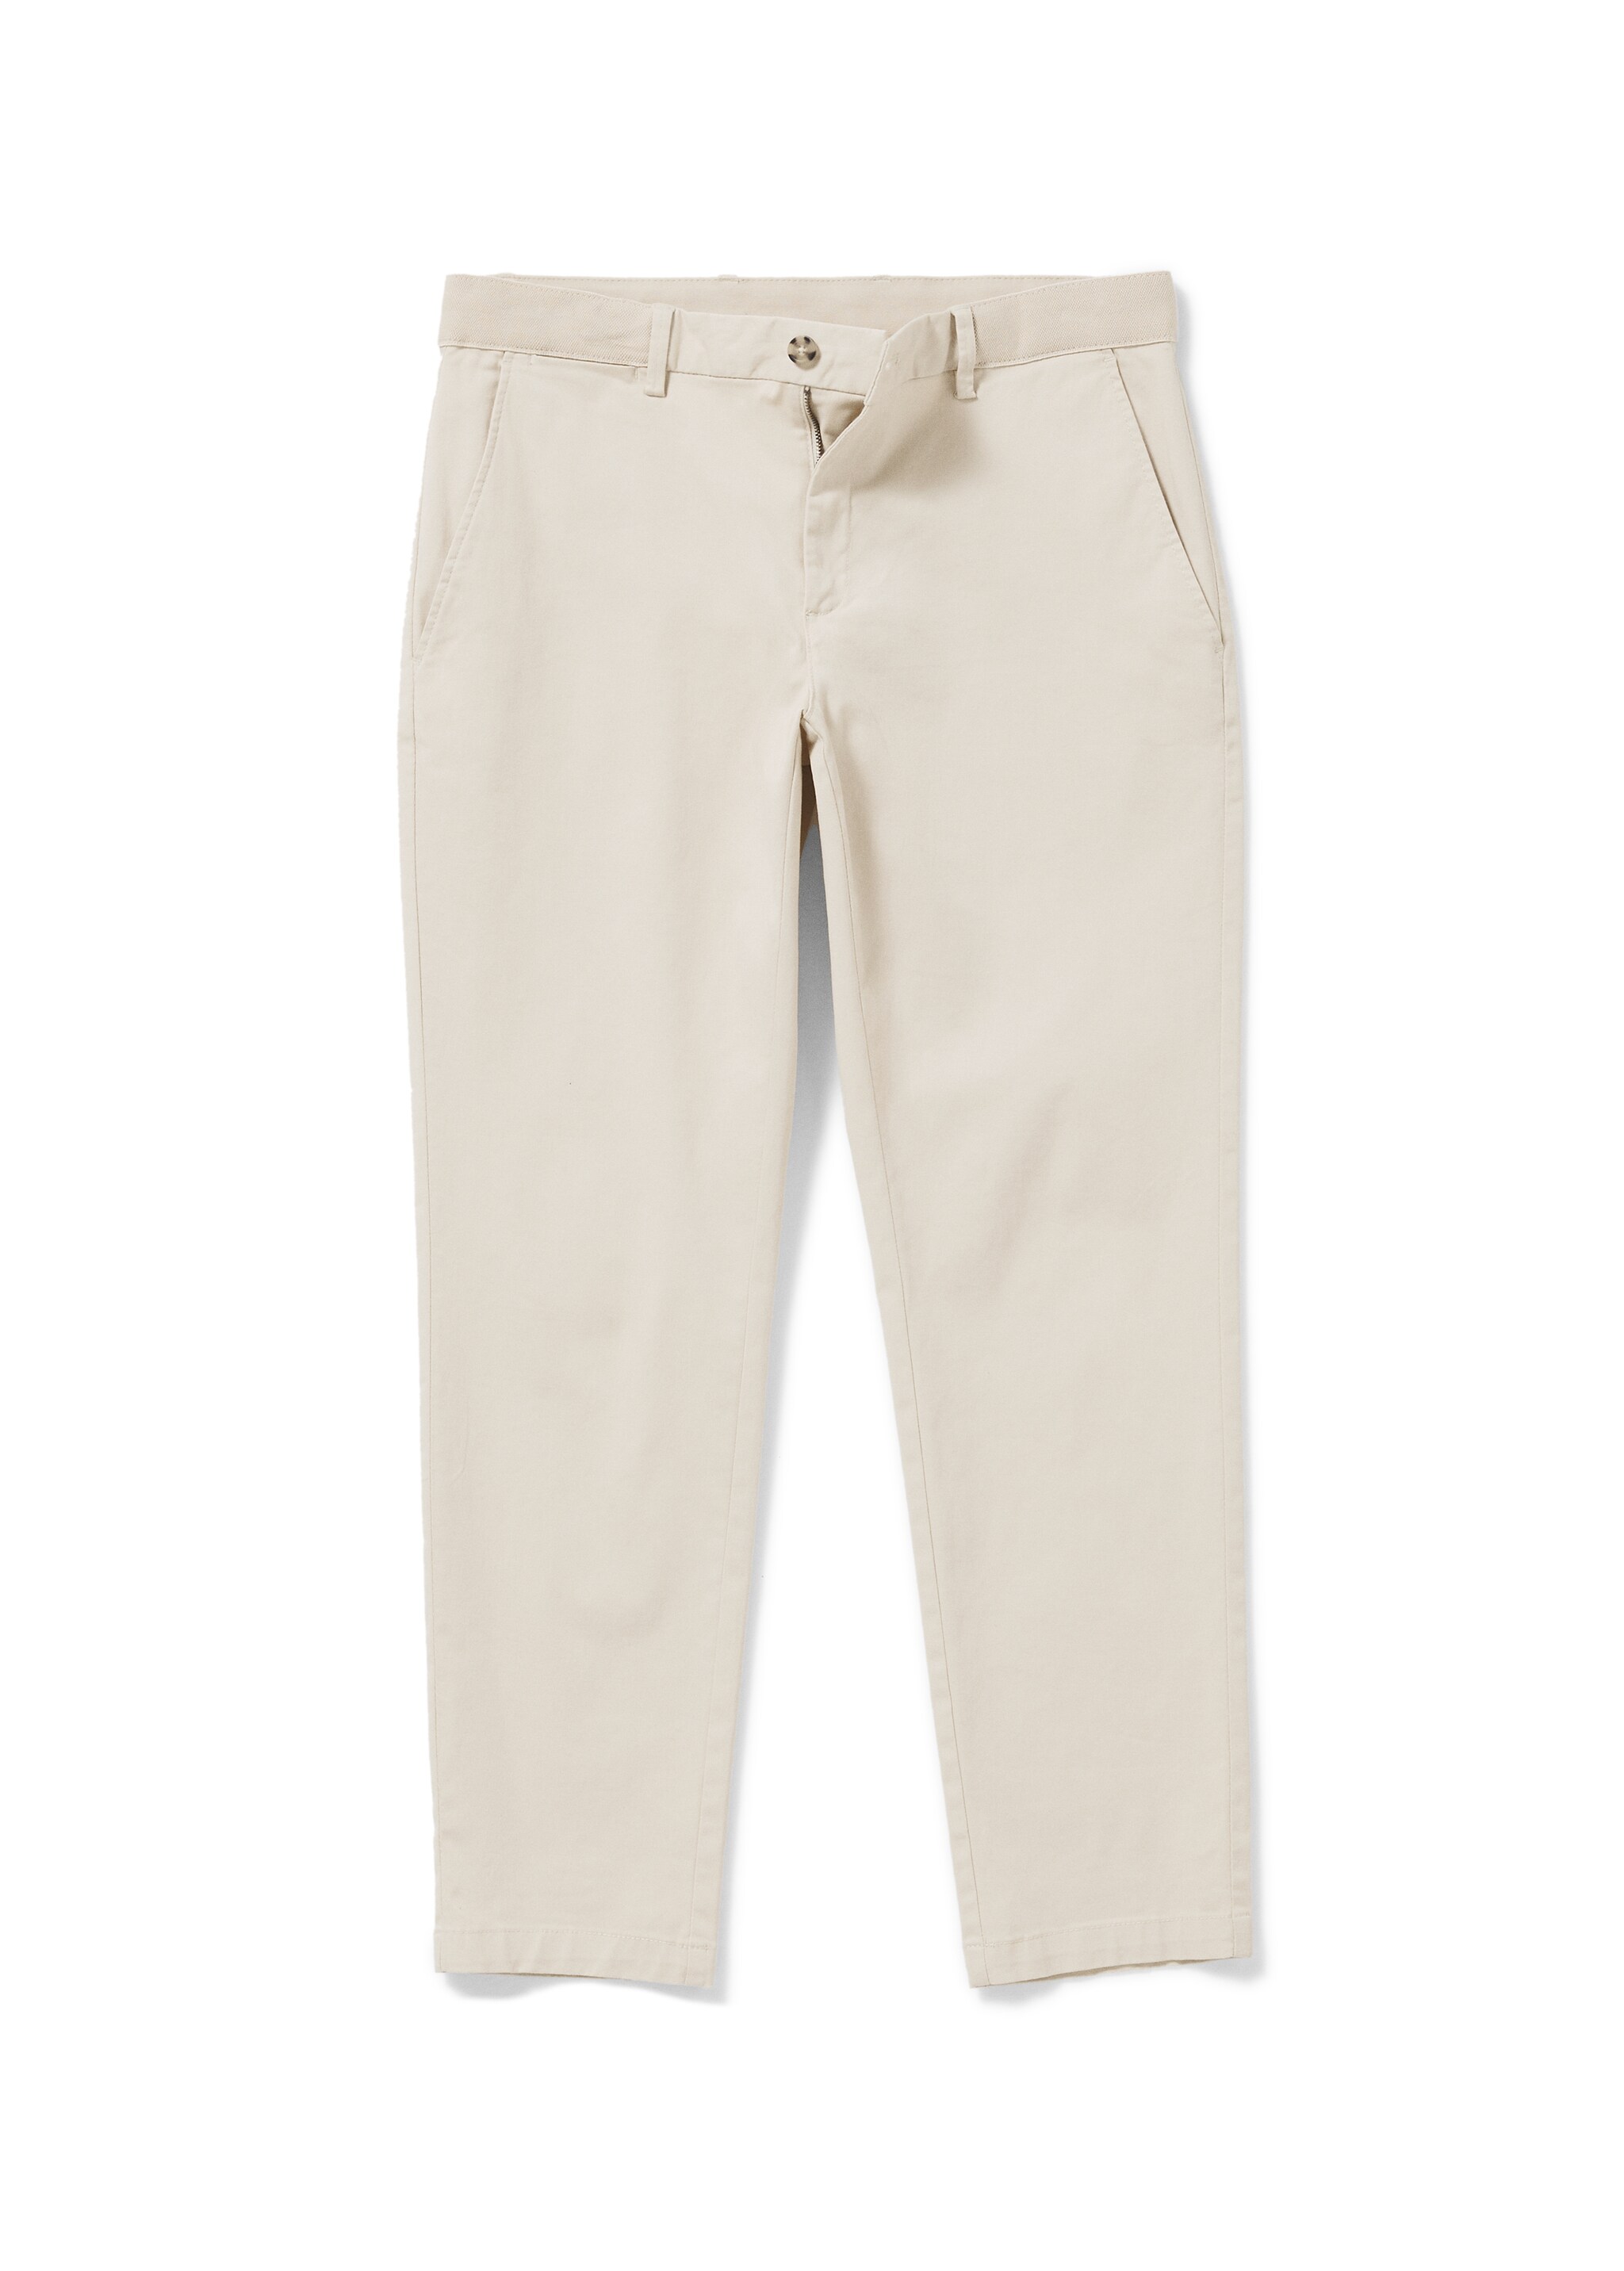 Pantalon coton tapered crop - Détail de l'article 9